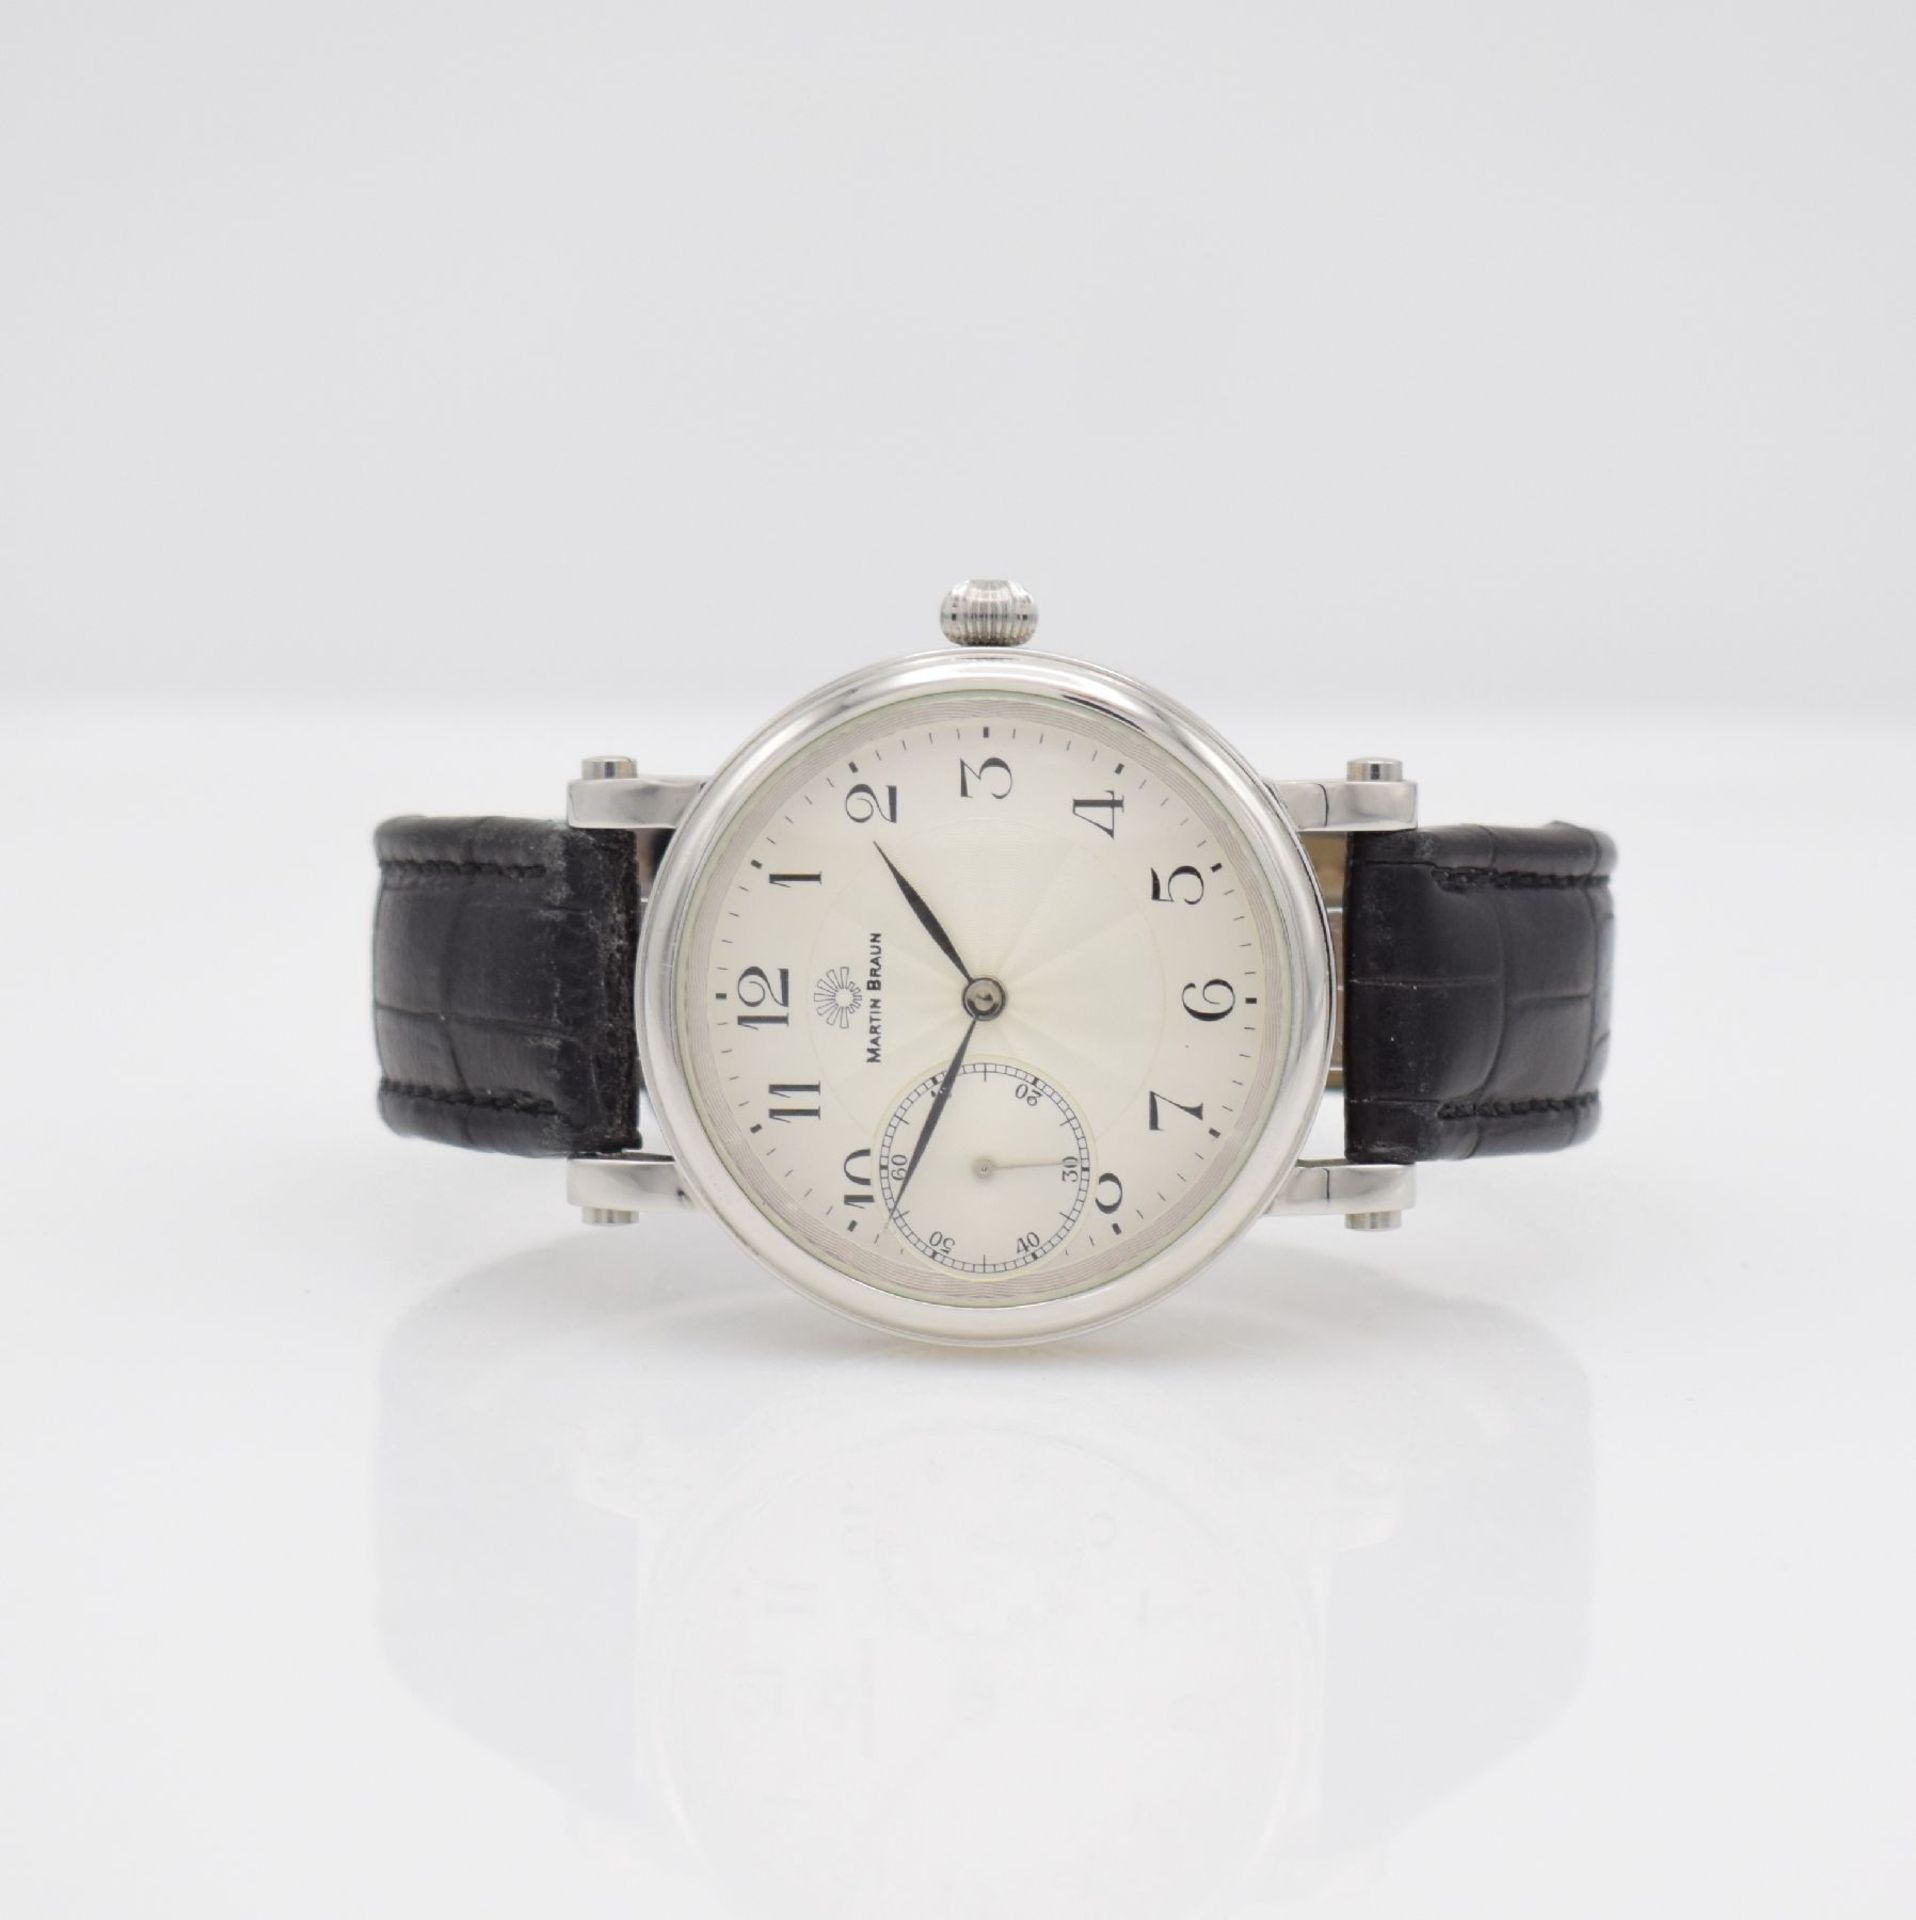 MARTIN BRAUN Grande gents wristwatch, Switzerland around 2007, manual winding, stainless steel